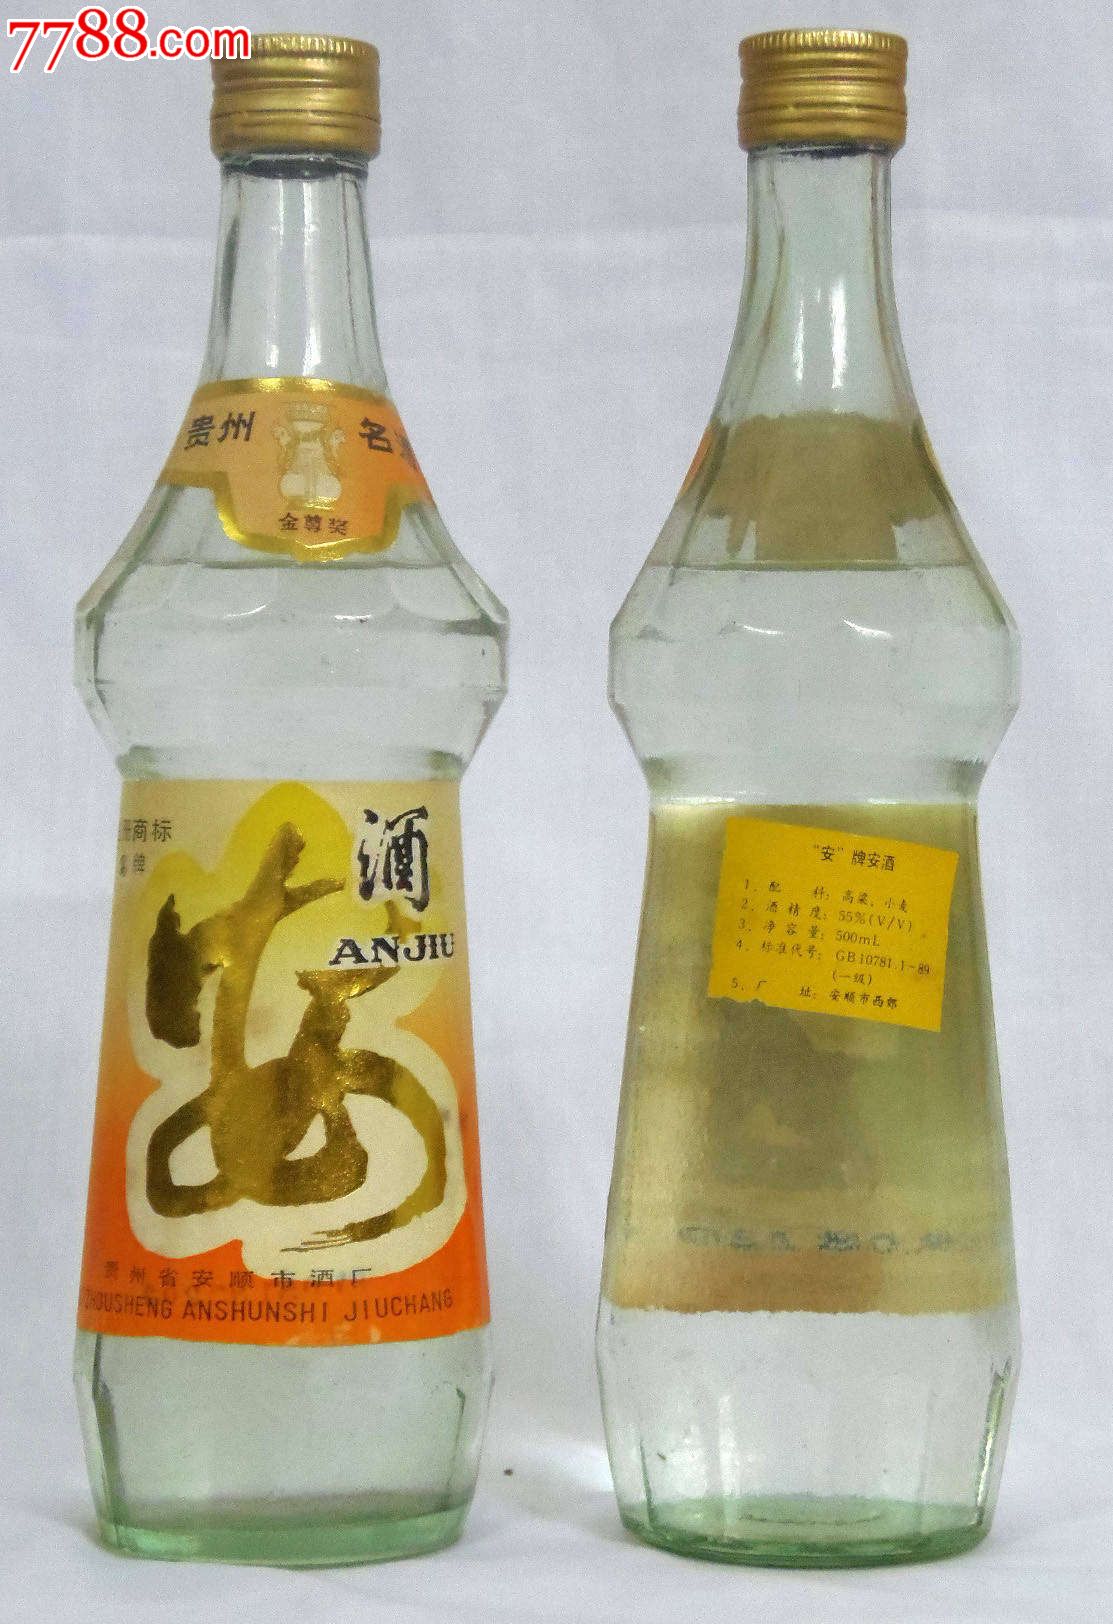 91年安酒-价格:500.0000元-se19226520-酒瓶-零售-7788收藏